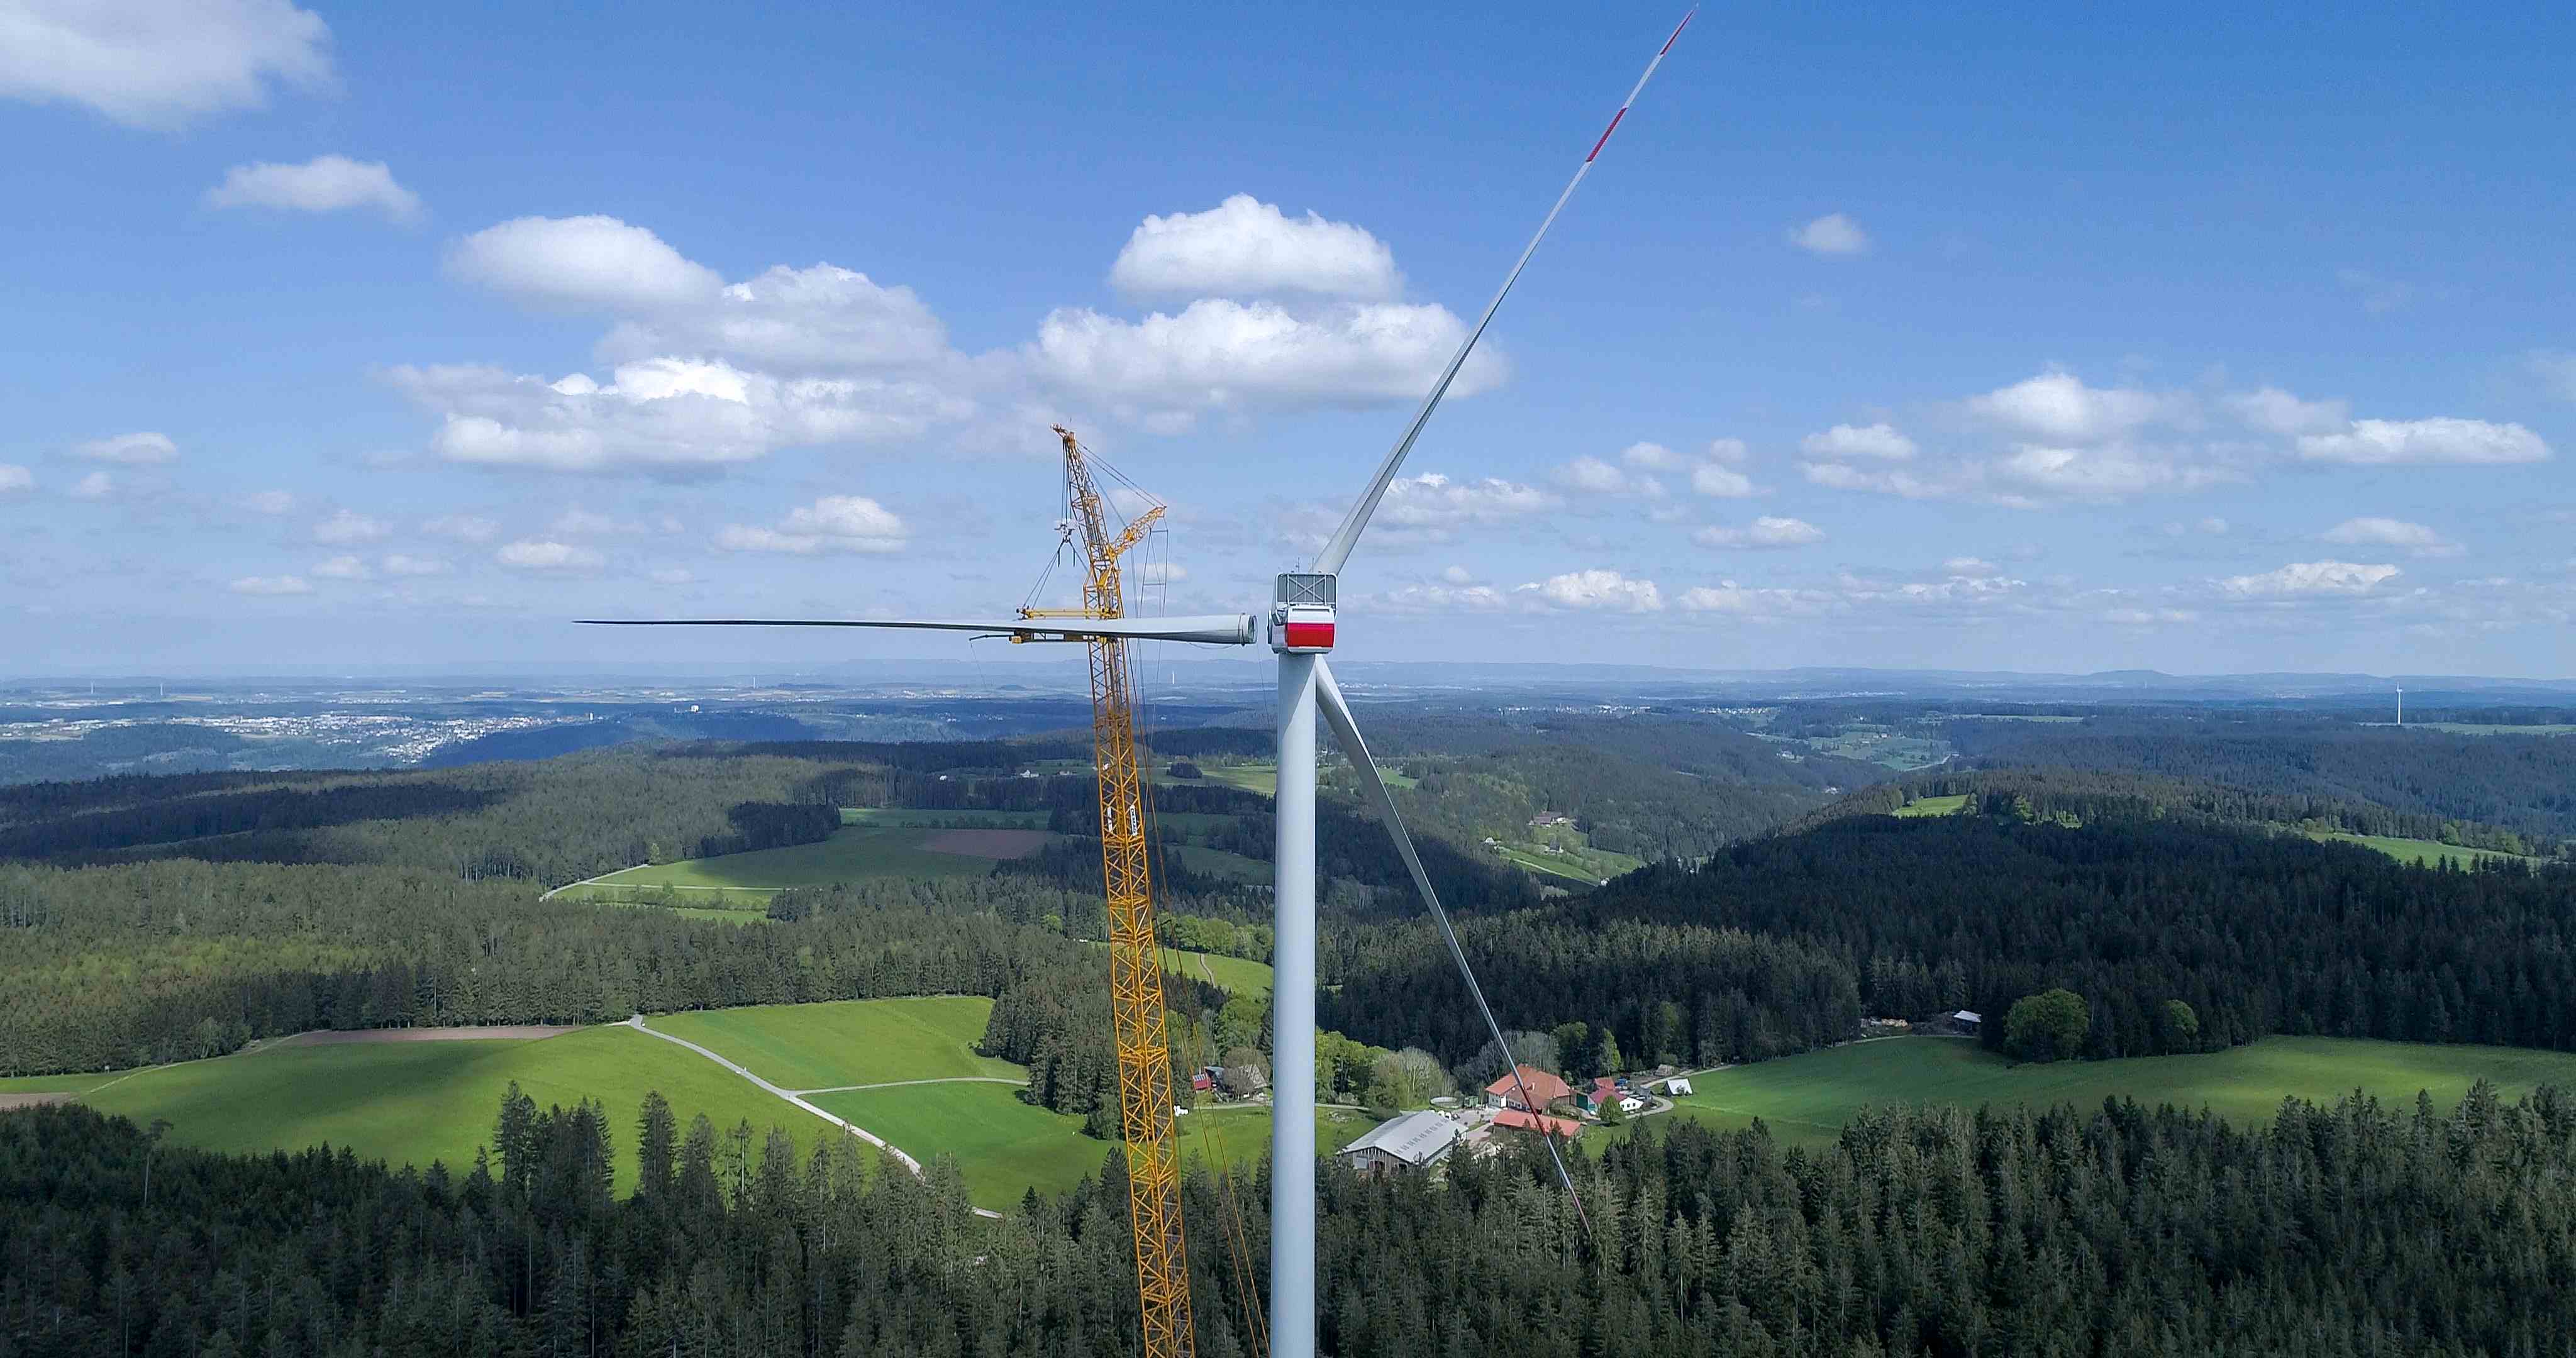 RES Errichtung Windkraftanlage Bildquelle Markus Ketterer kl